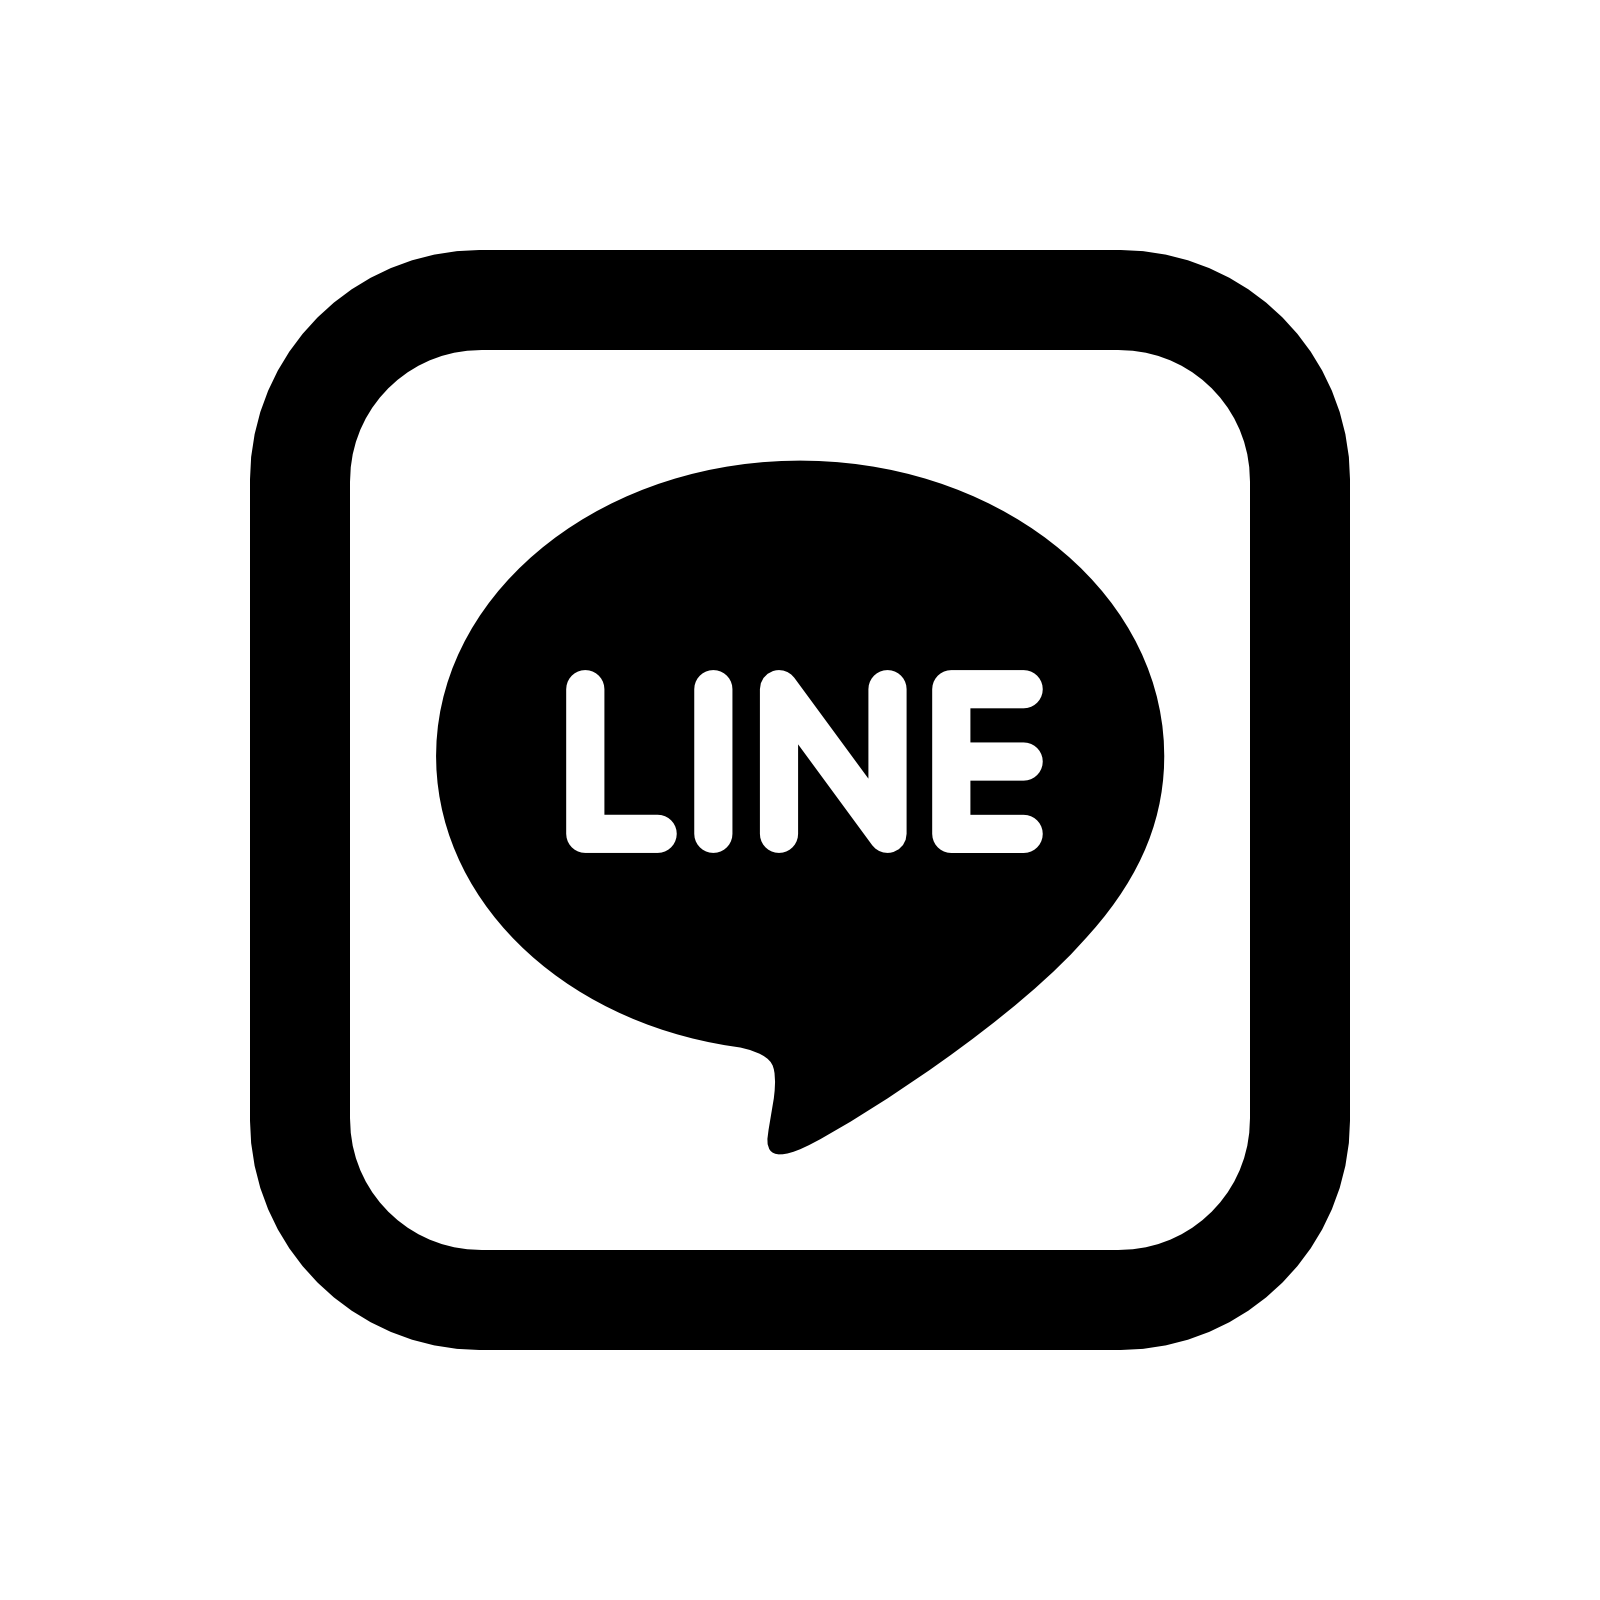 Line Logo - Line Logo Png Image